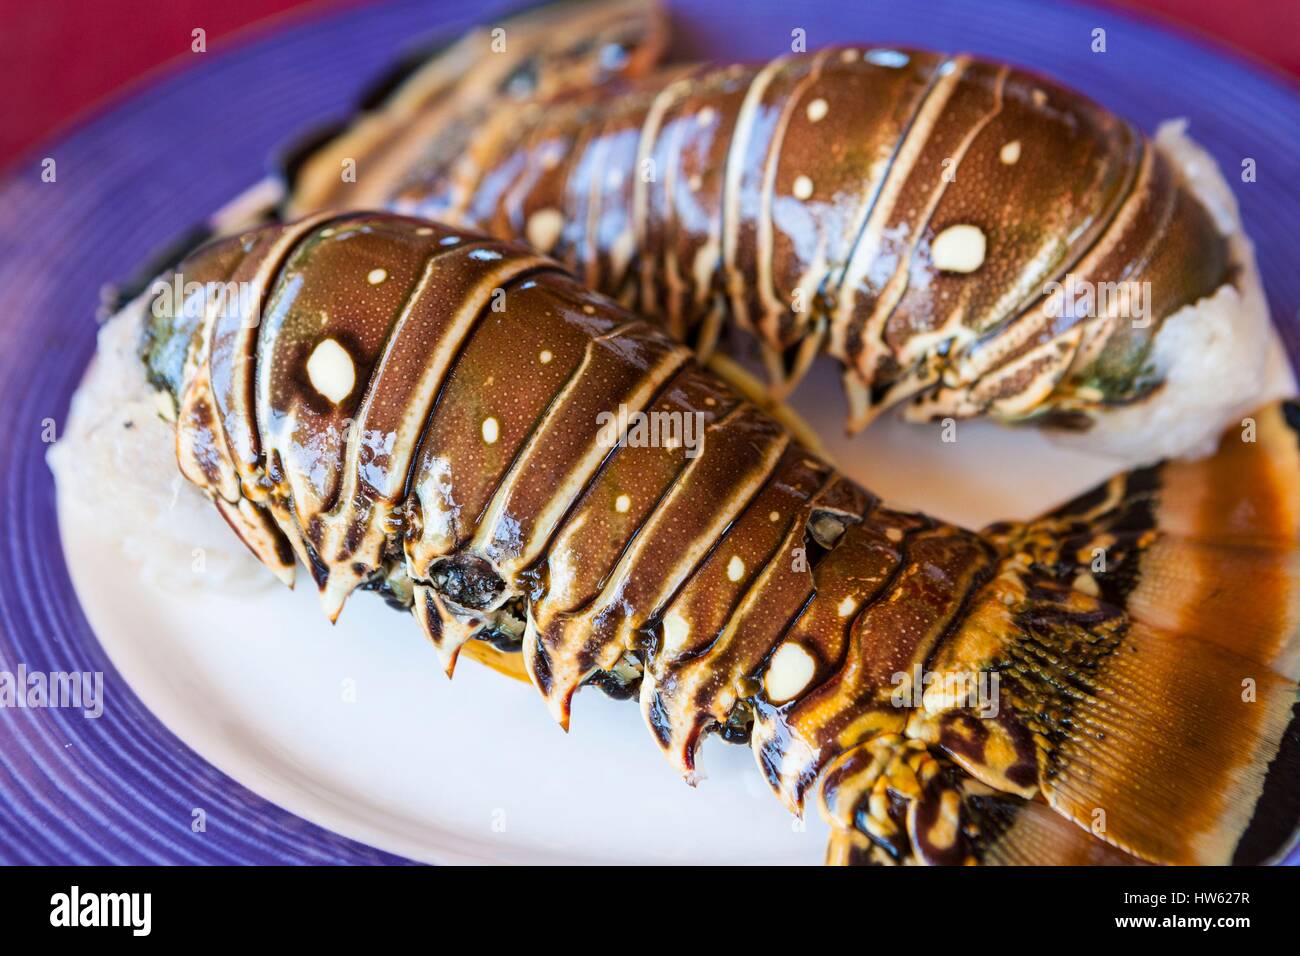 Cuba, Cienfuegos province, Cienfuegos, Rancho Luna, spiny lobster dish Stock Photo